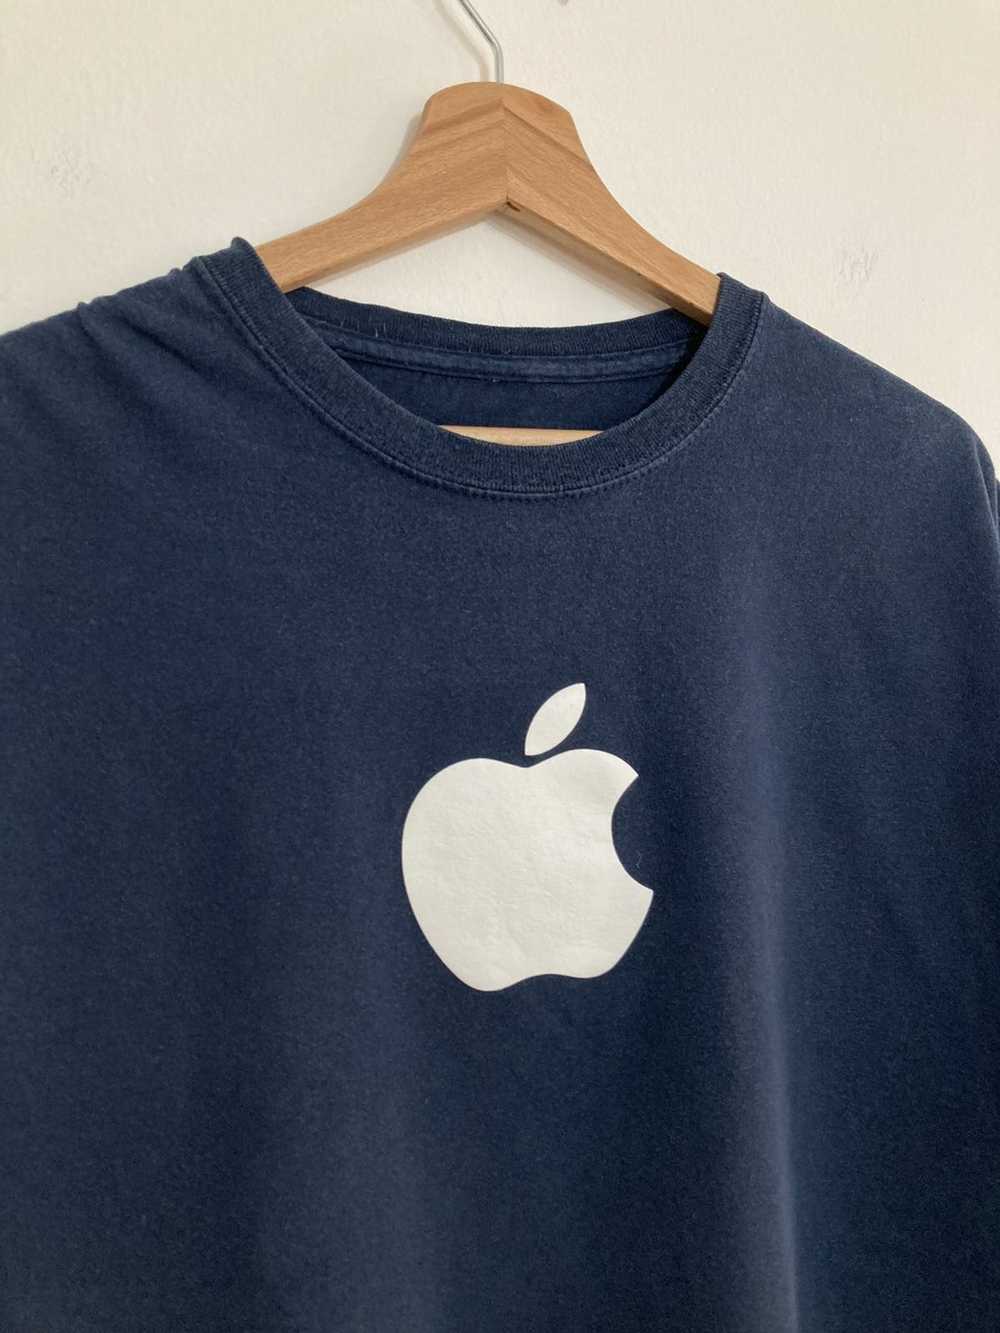 Apple × Vintage Apple Vintage tee 90s streetwear … - image 4